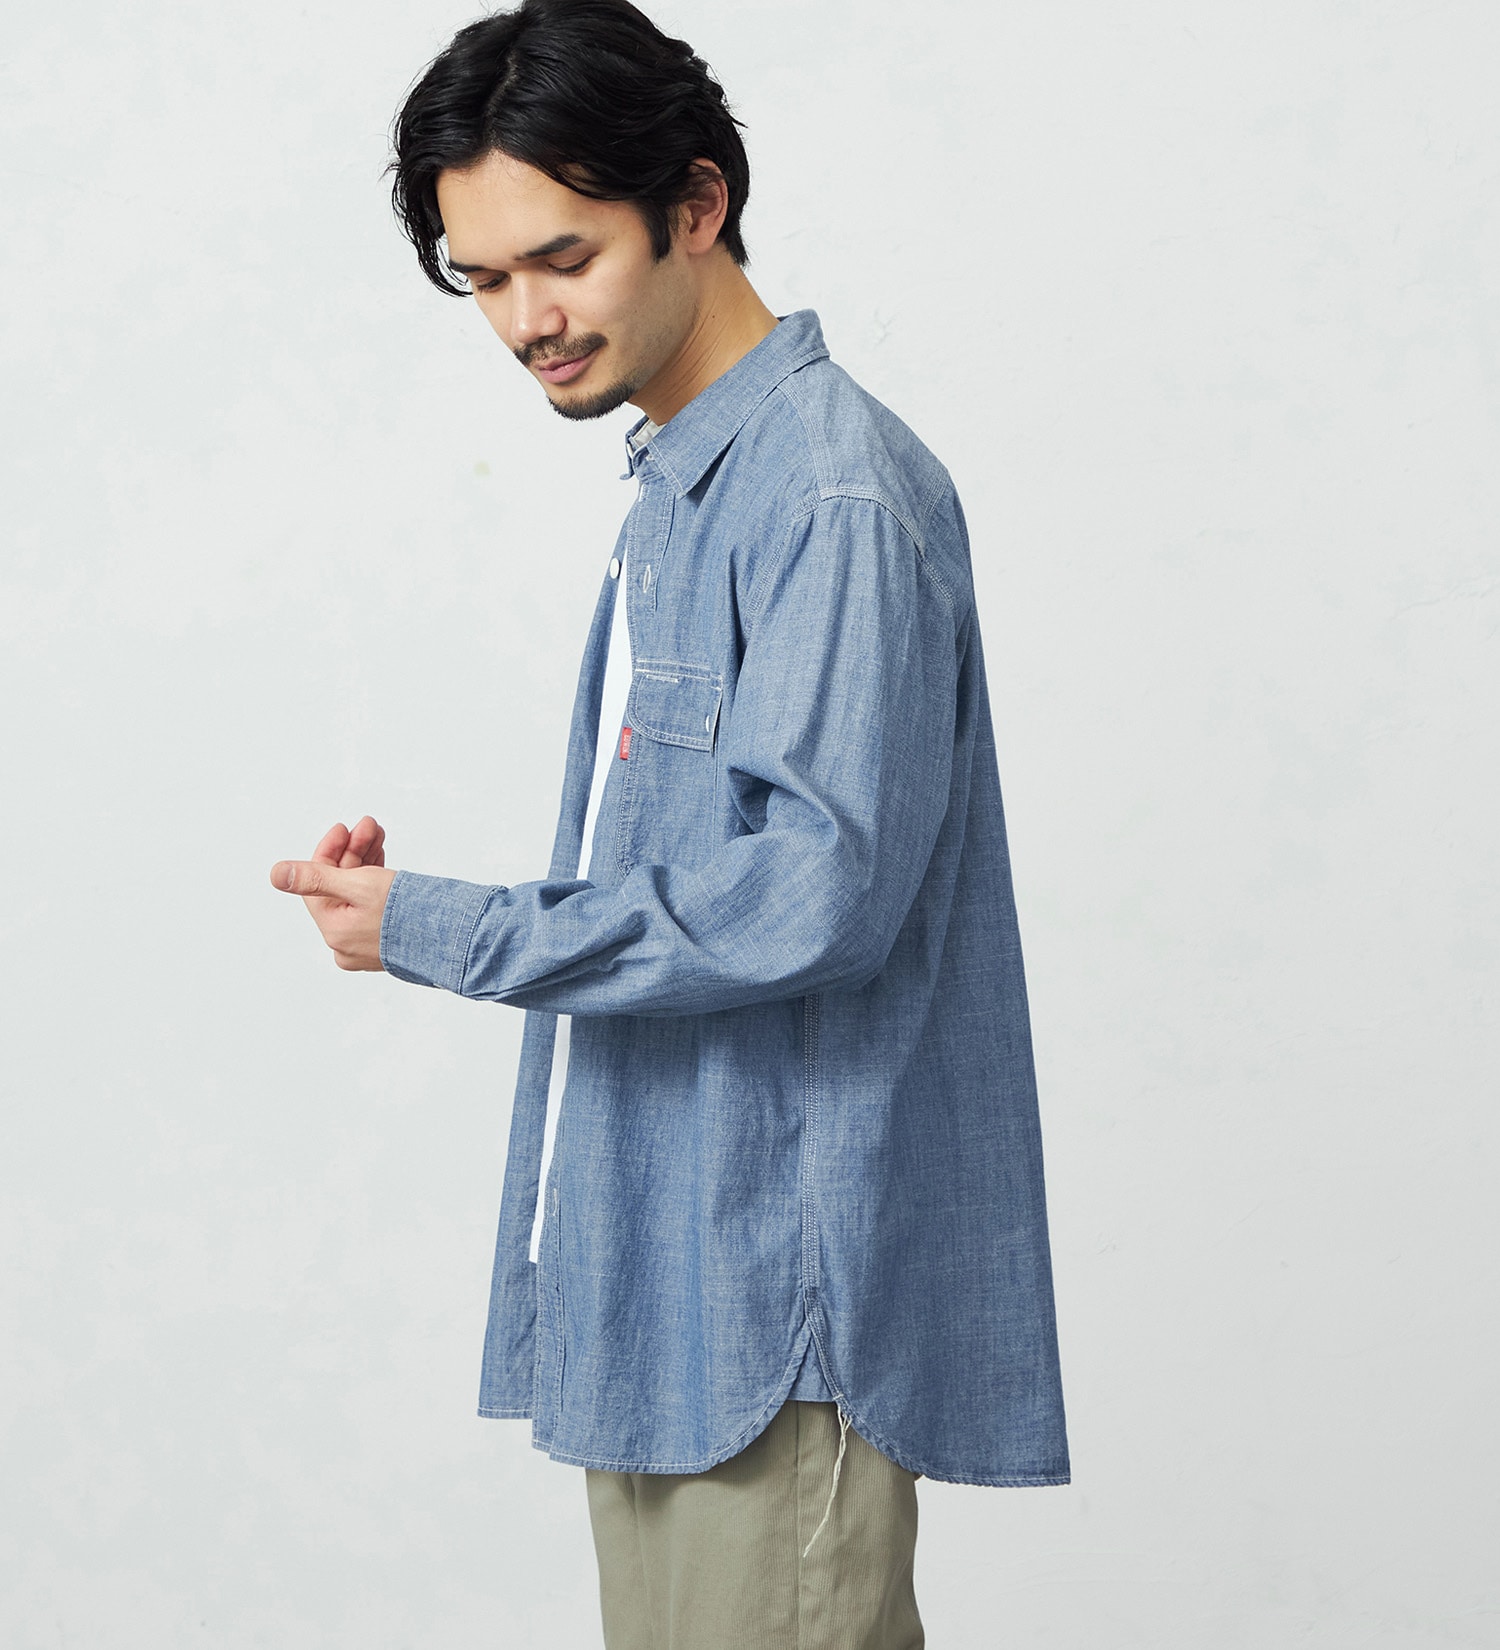 EDWIN(エドウイン)のヴィンテージワークシャツ 長袖|トップス/シャツ/ブラウス/メンズ|淡色ブルー